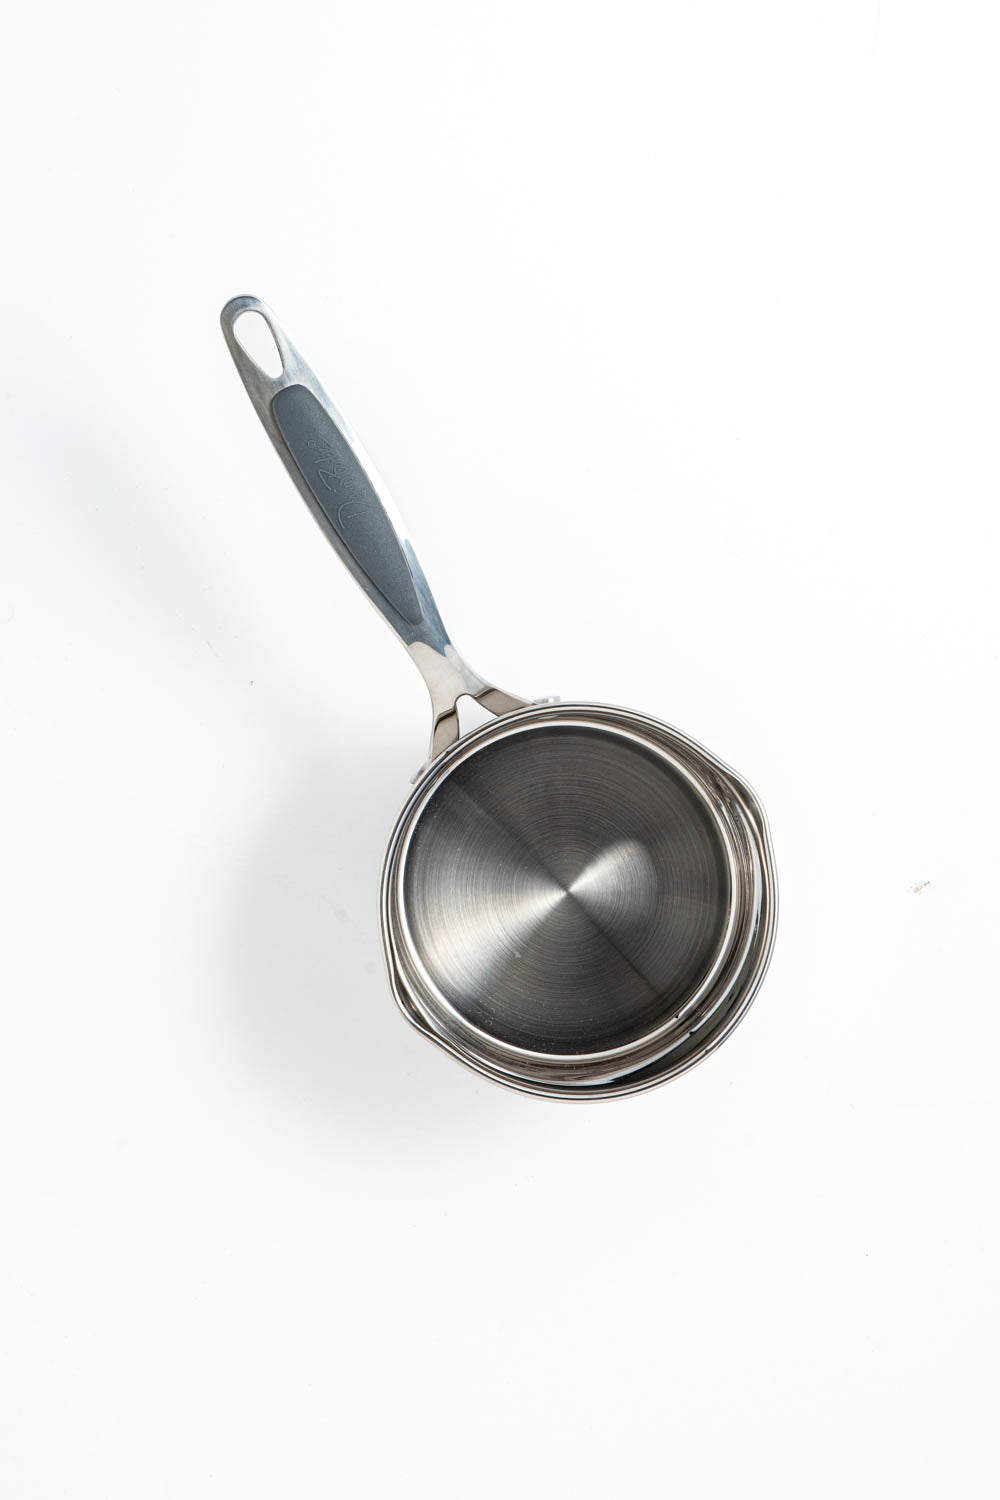 David Burke Gourmet Pro 3 Quart Aluminum Covered Sauce Pan Pot